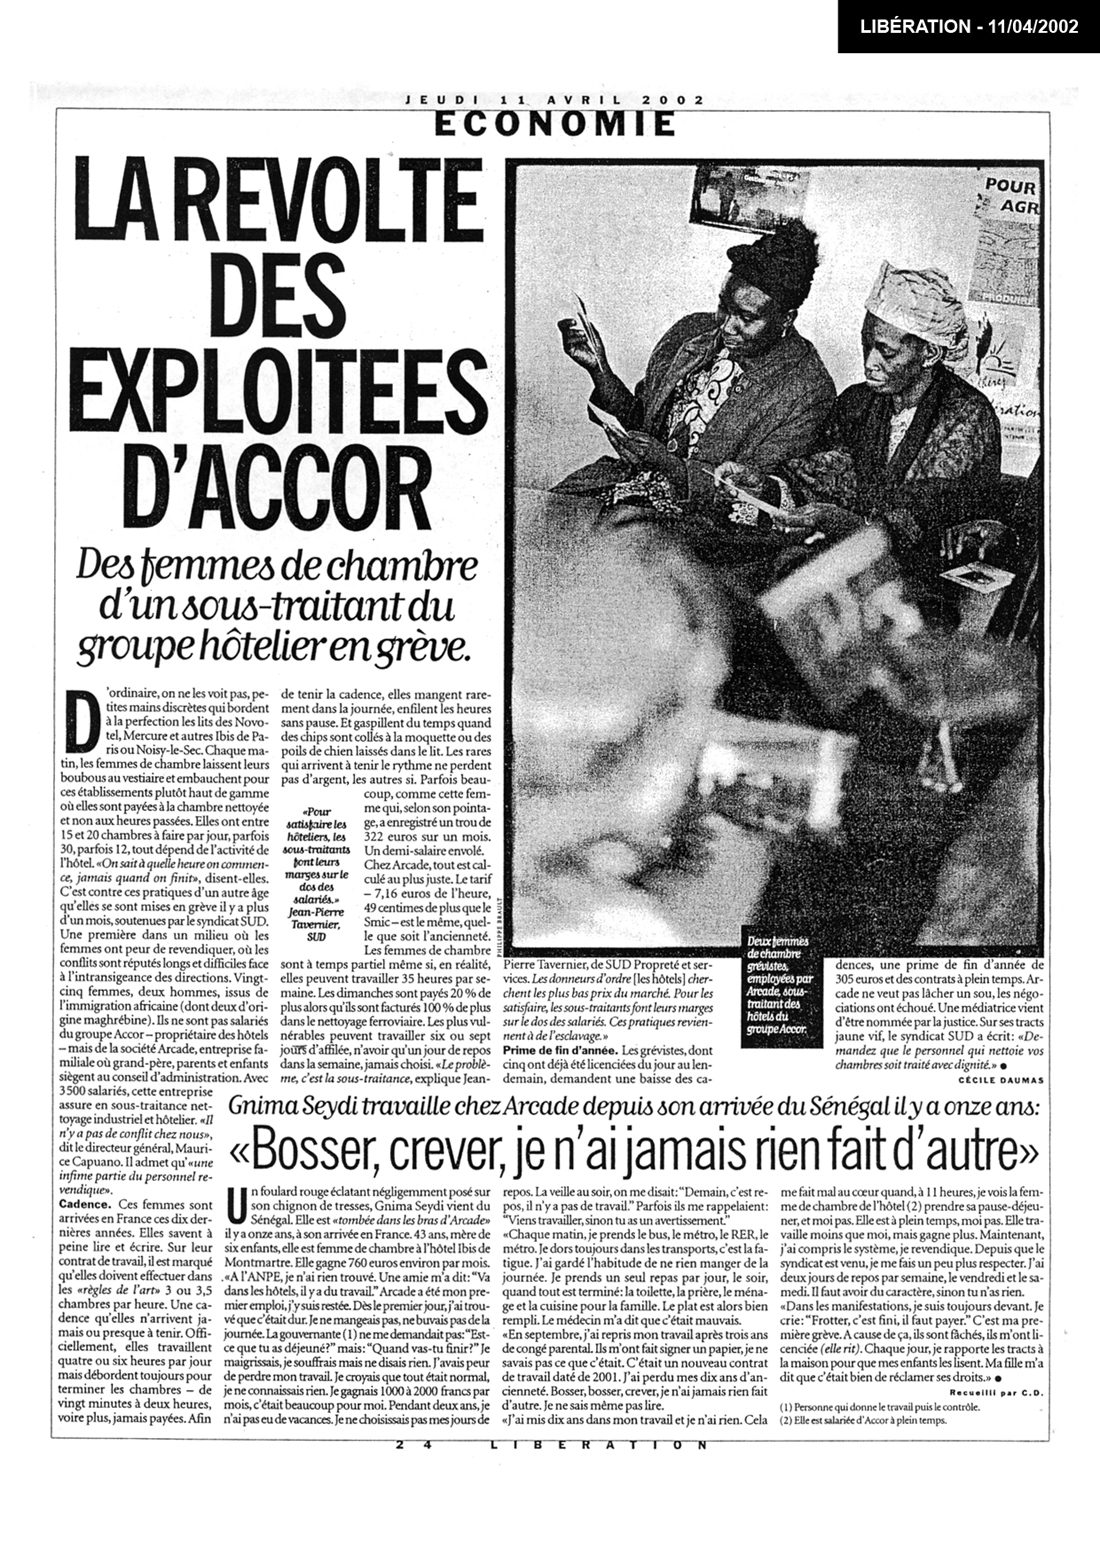 Une de Libération, 11/04/2002. Source : site du documentaire Remue-ménage dans la sous-traitance